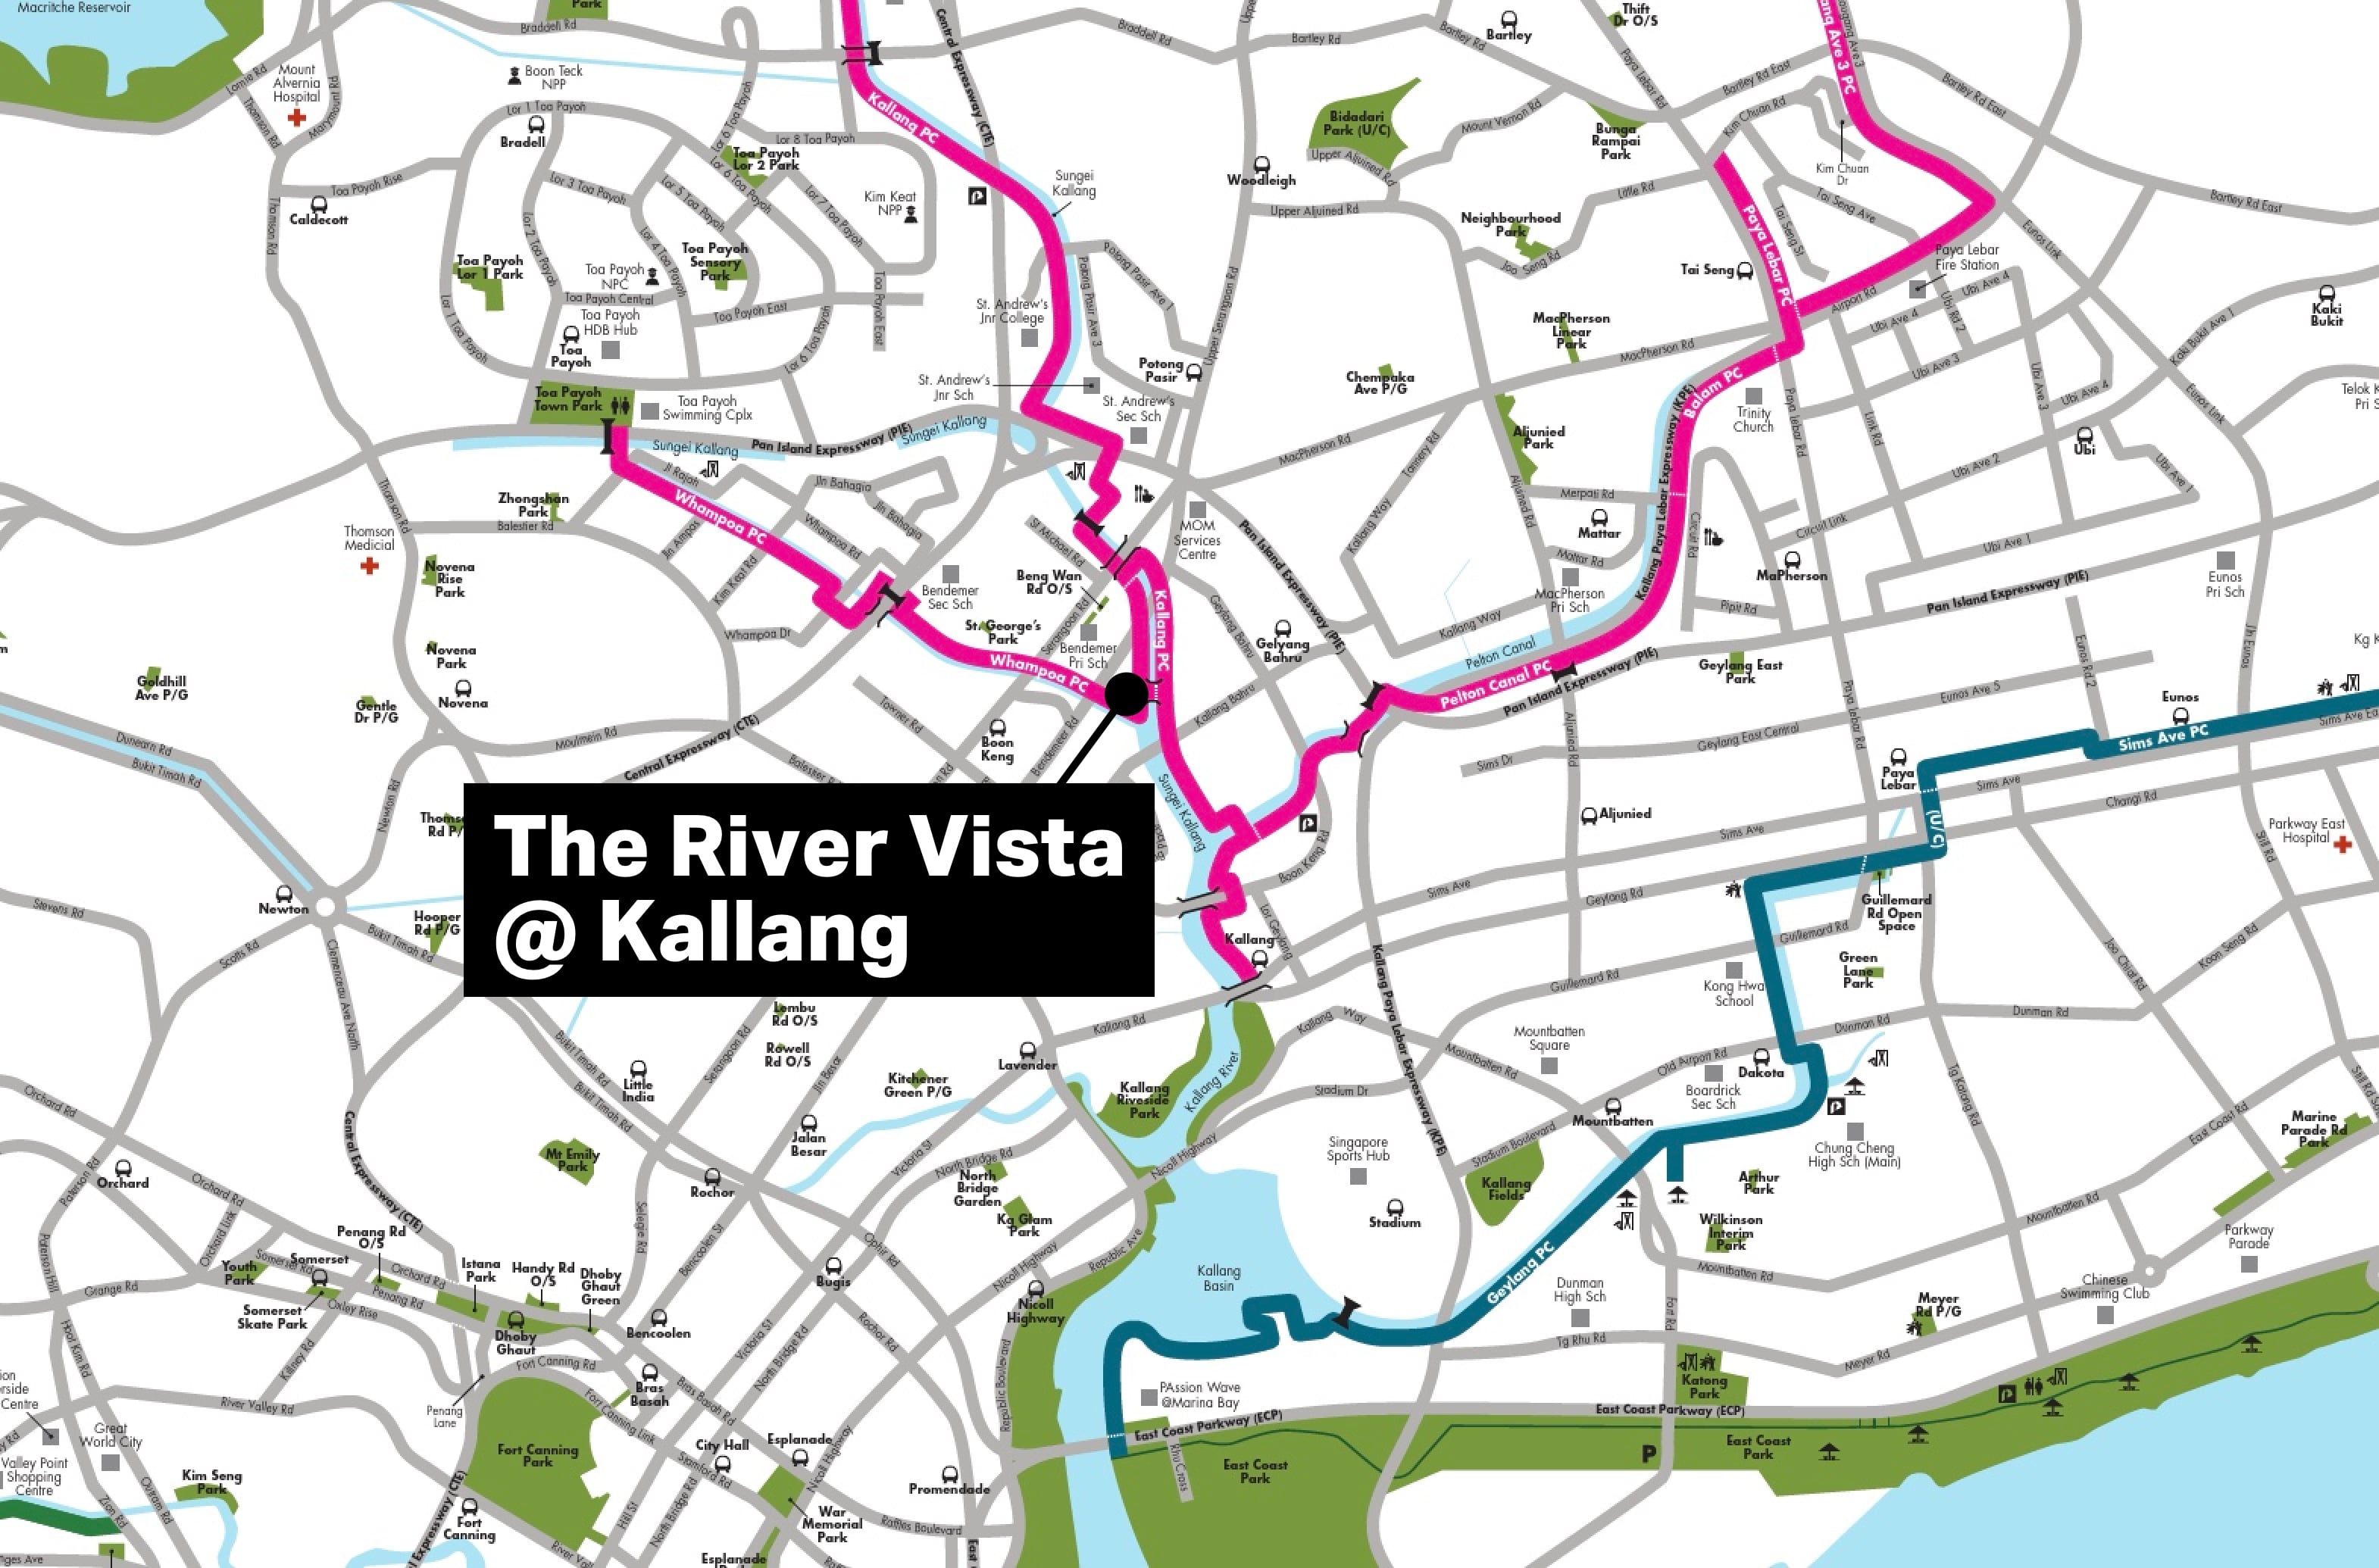 The River Vista @ Kallang Park Connector